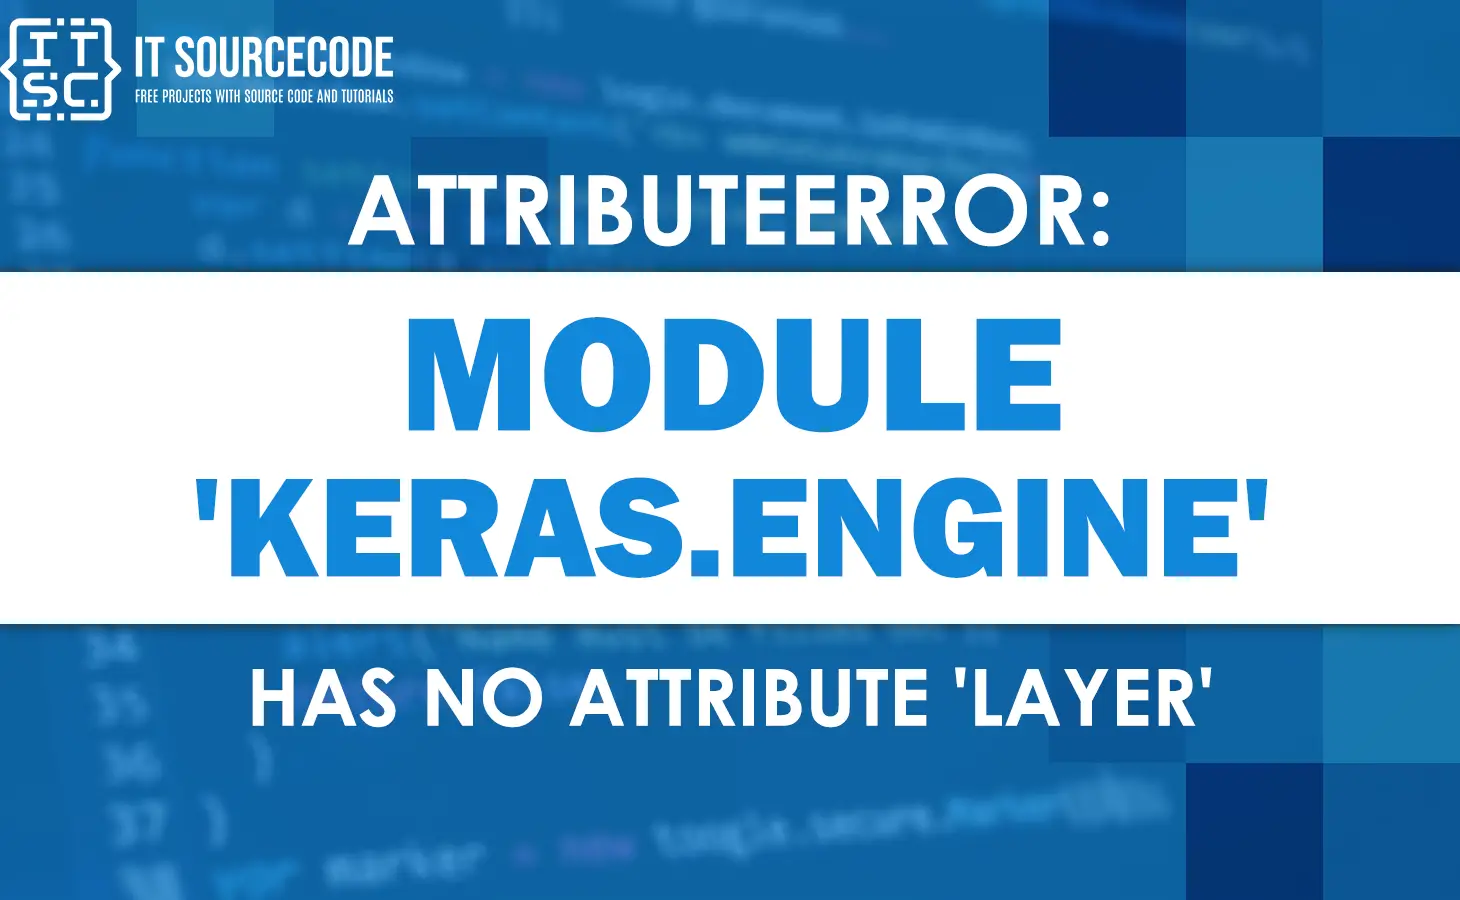 Attributeerror: module keras.engine has no attribute layer